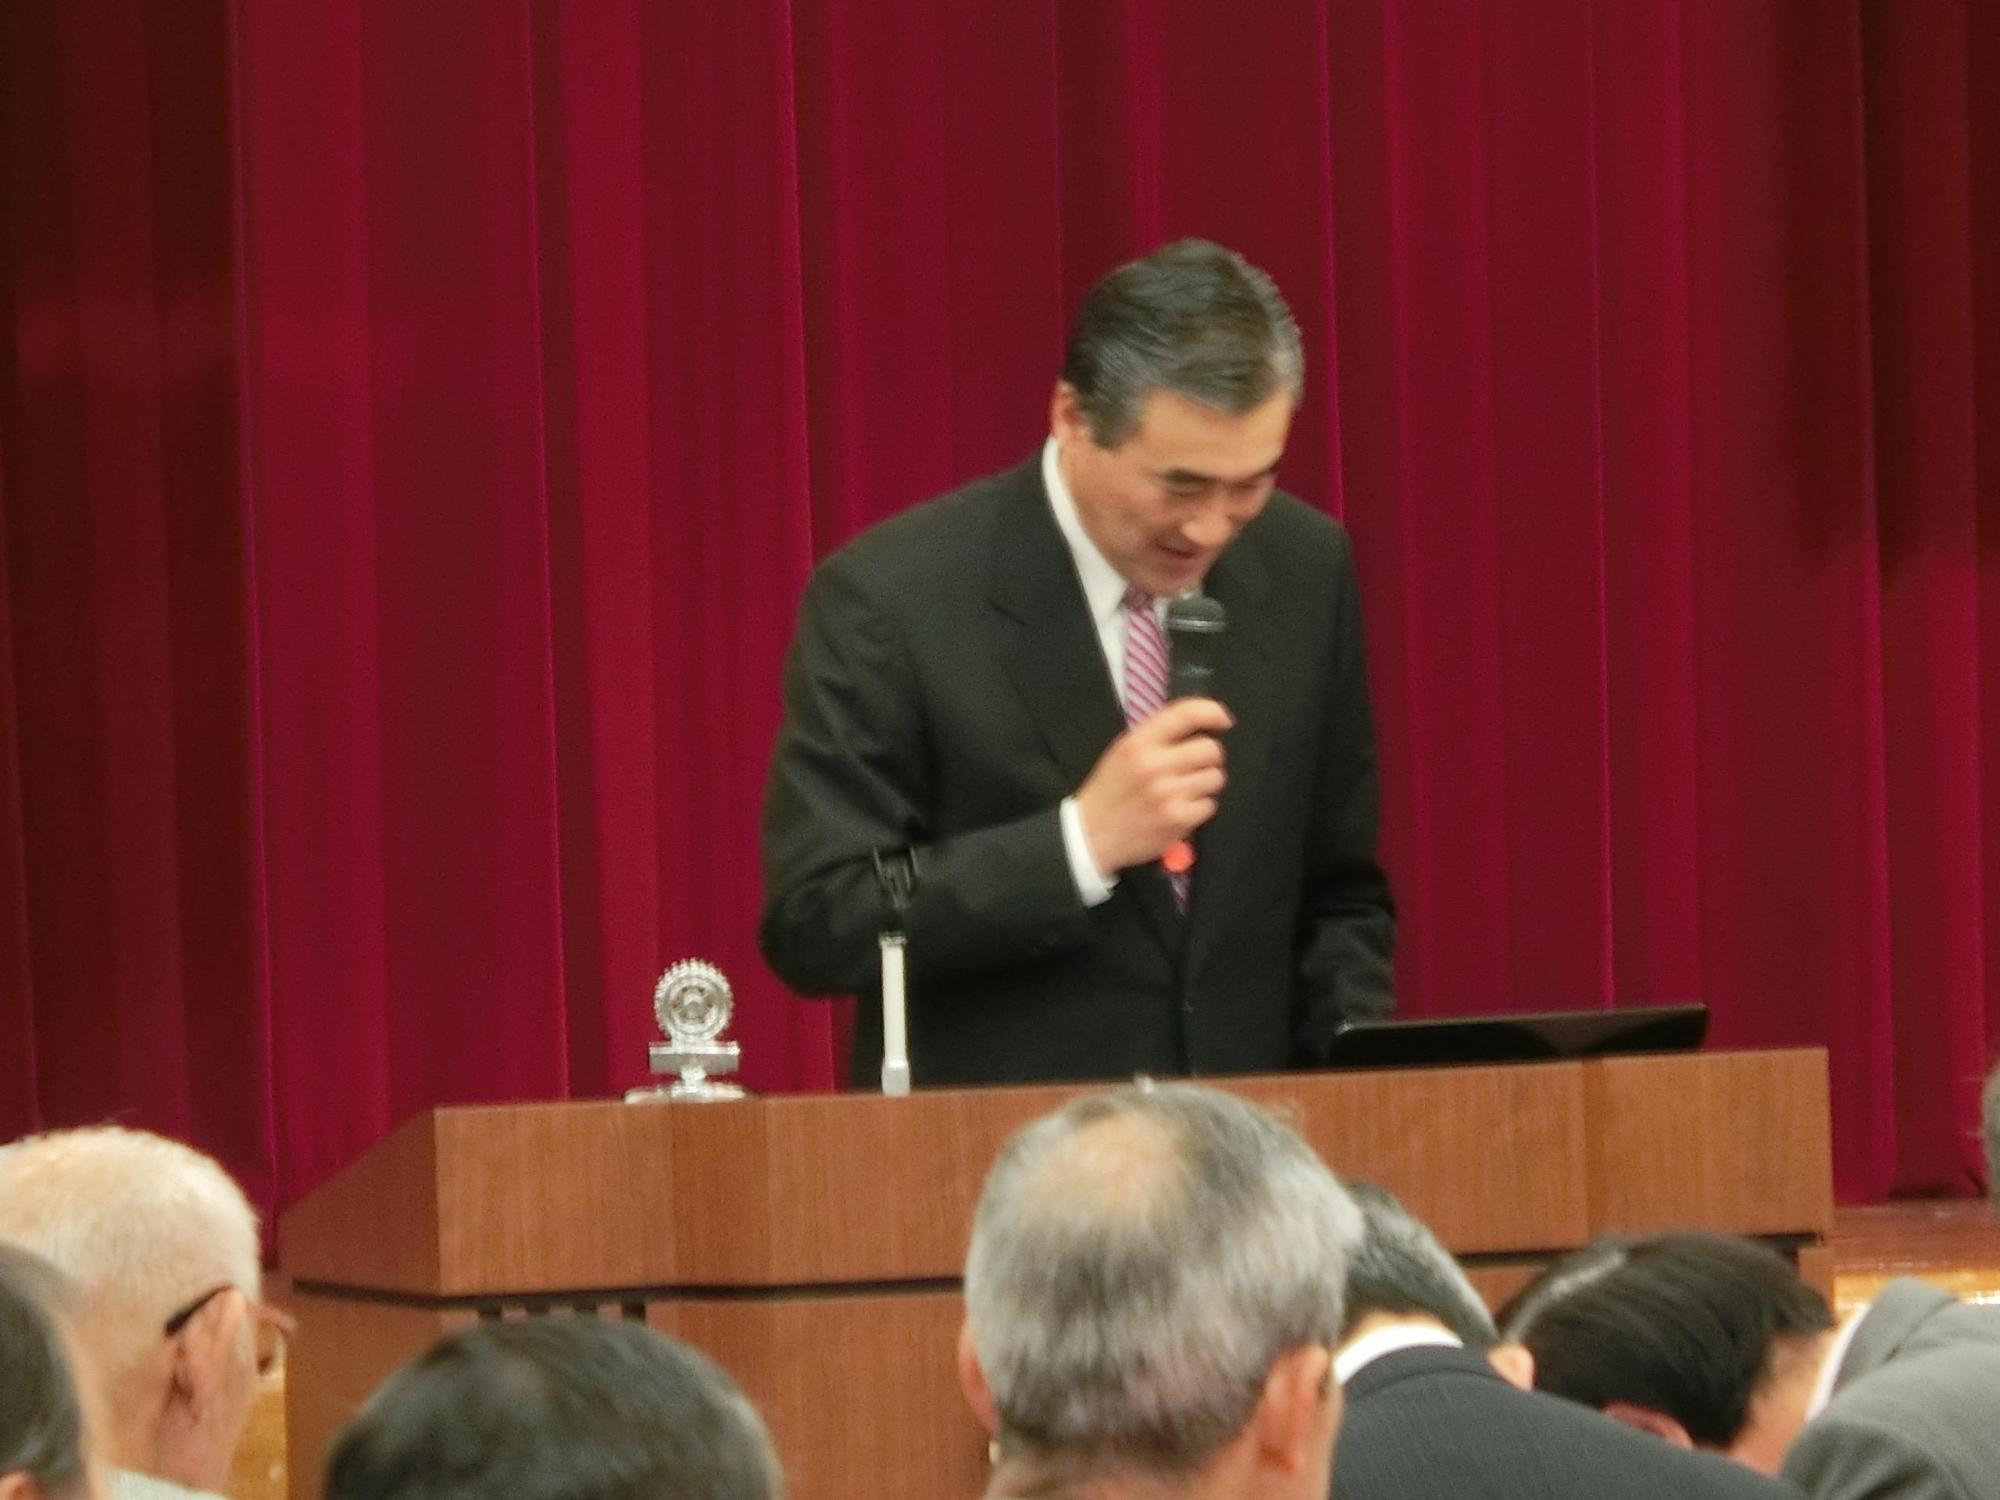 スピーチをする市長の写真